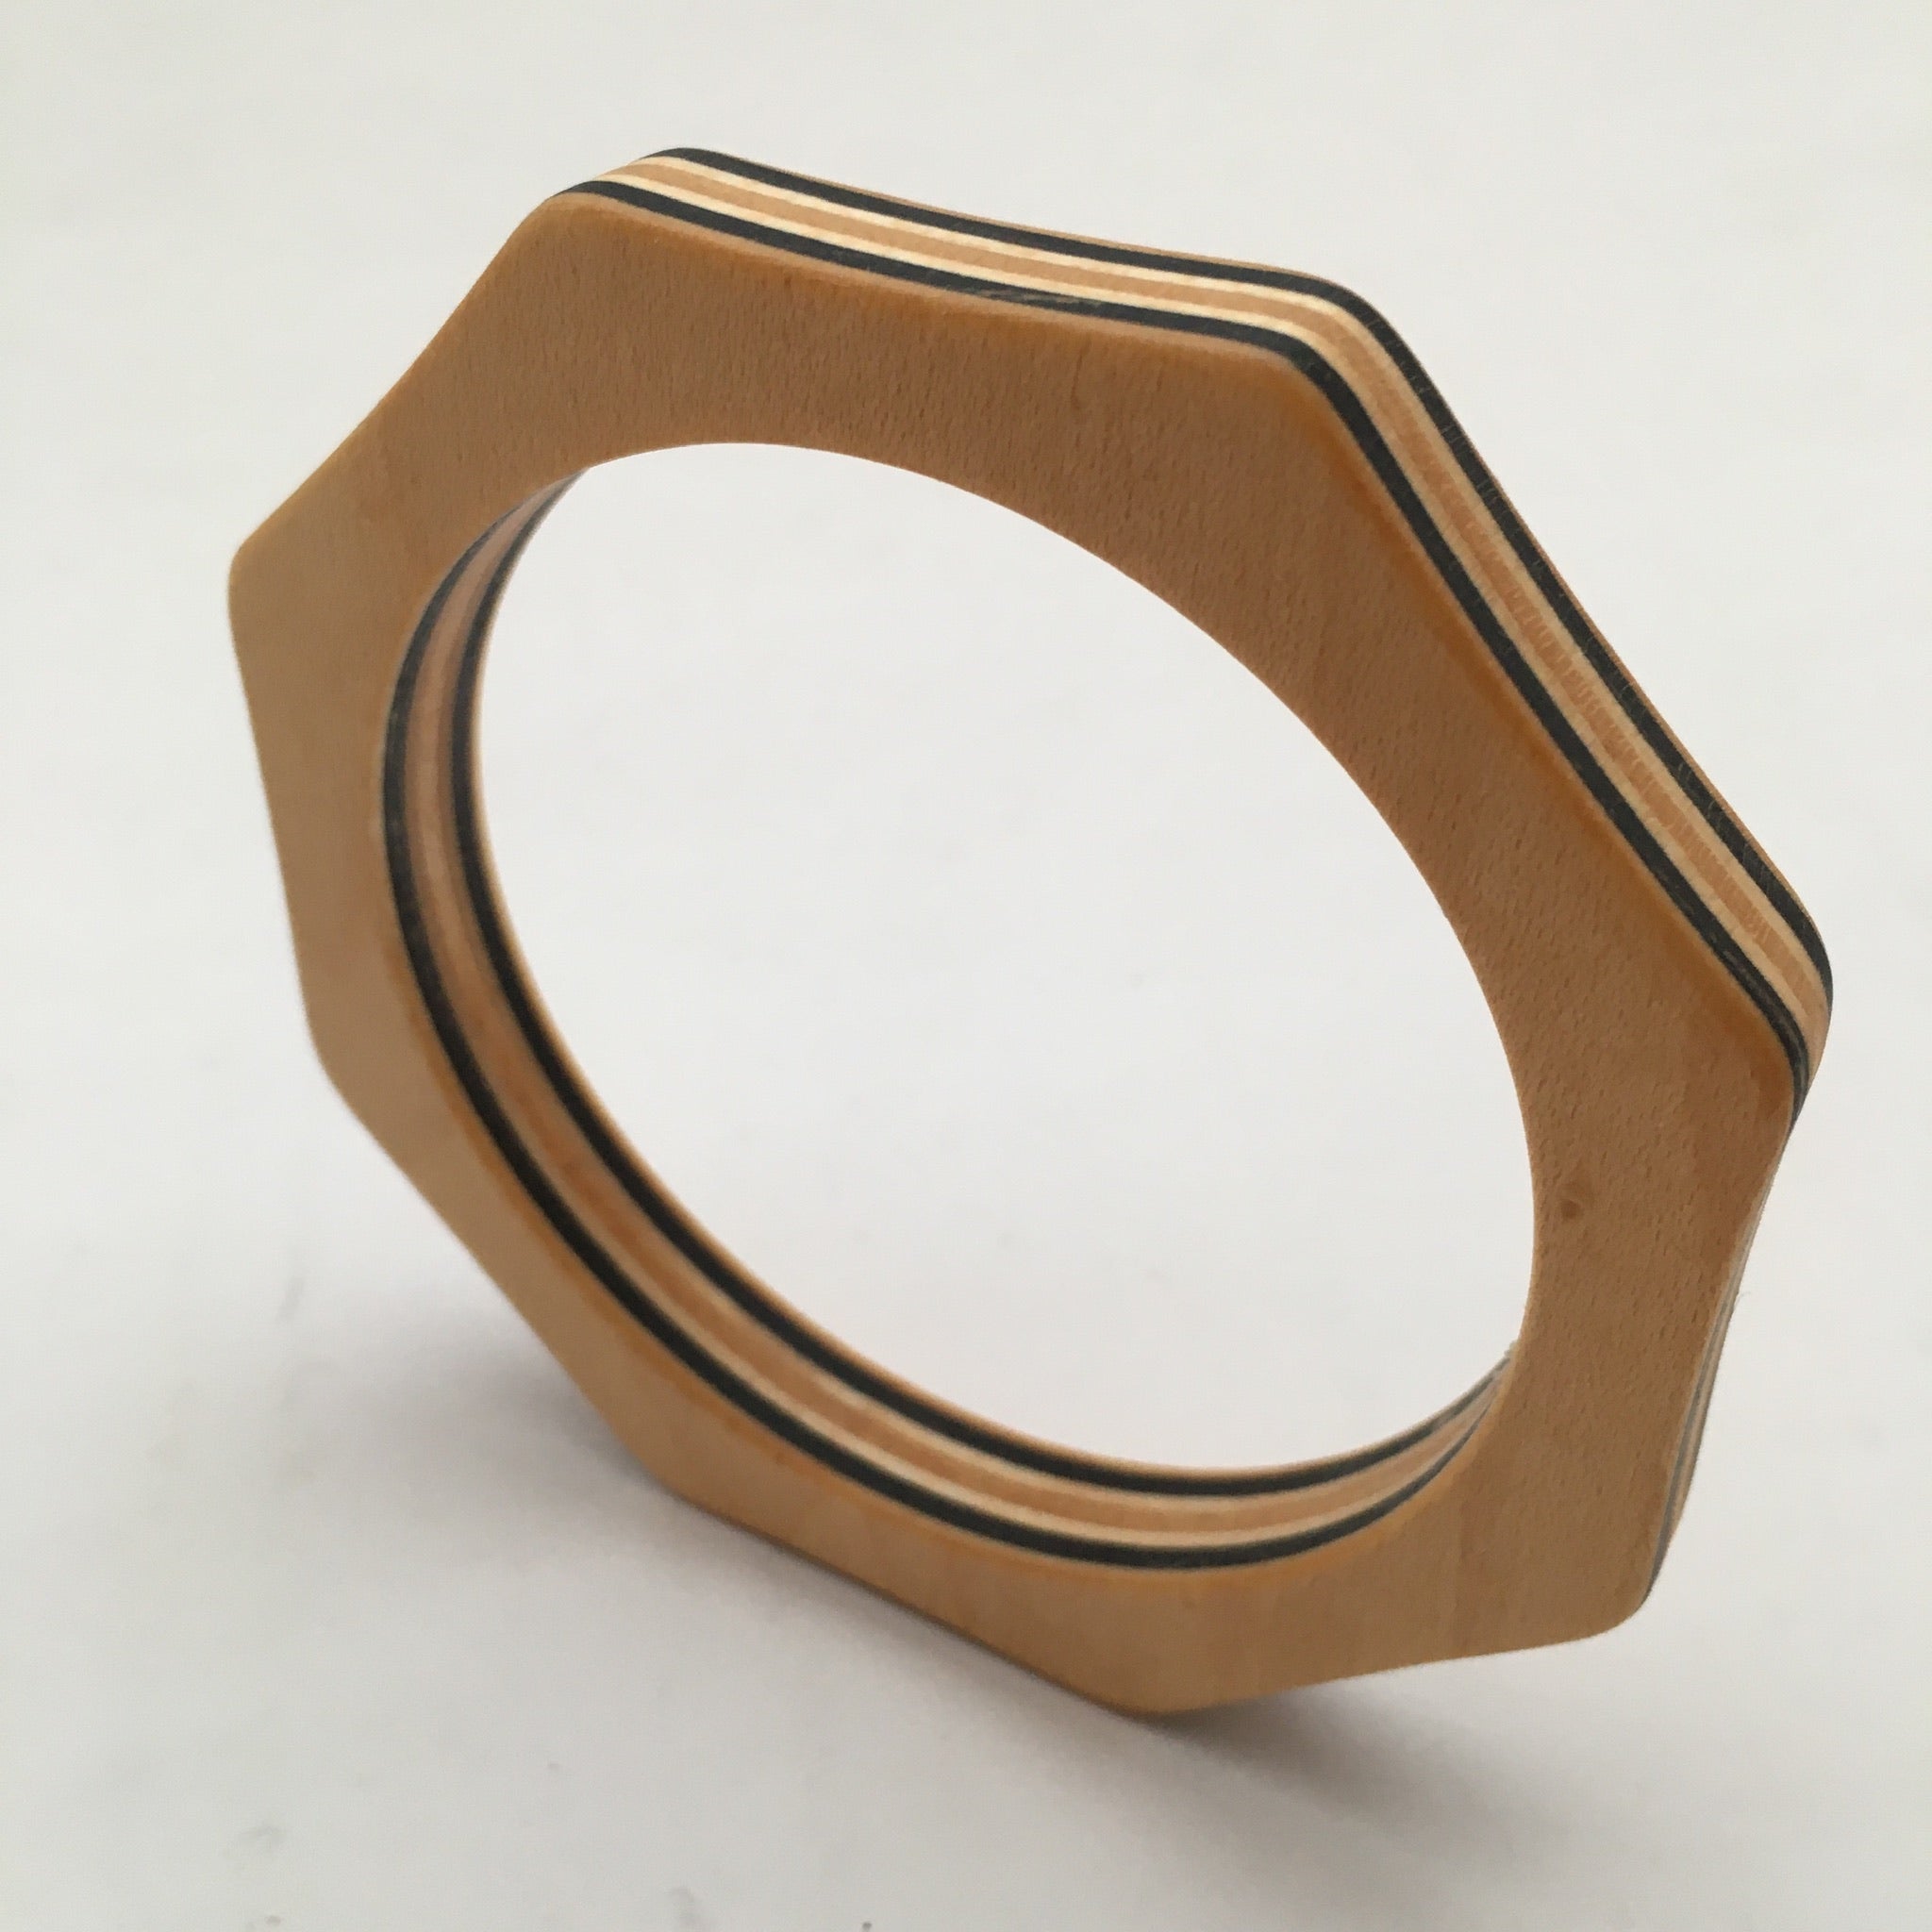 LGS Skateboard wooden bracelet - octagonal